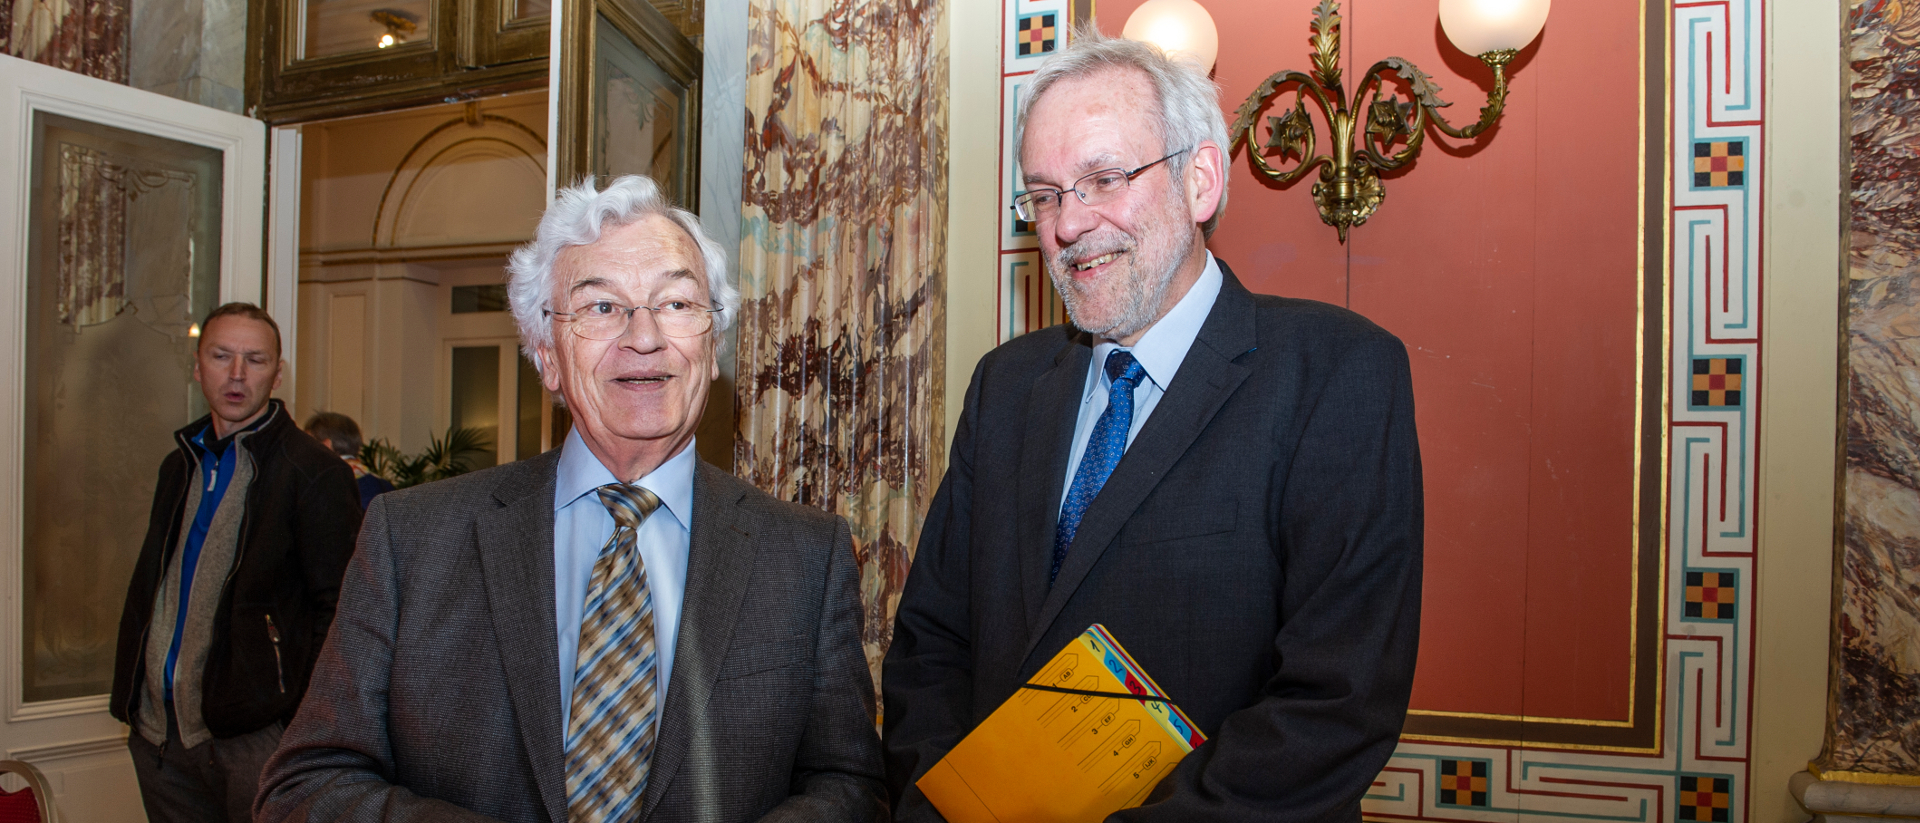 2014 an der Herbert-Haag-Preisverleihung in Luzern: Leo Karrer (links) mit Christian Weisner, dem Mitbegründer von "Wir sind Kirche".